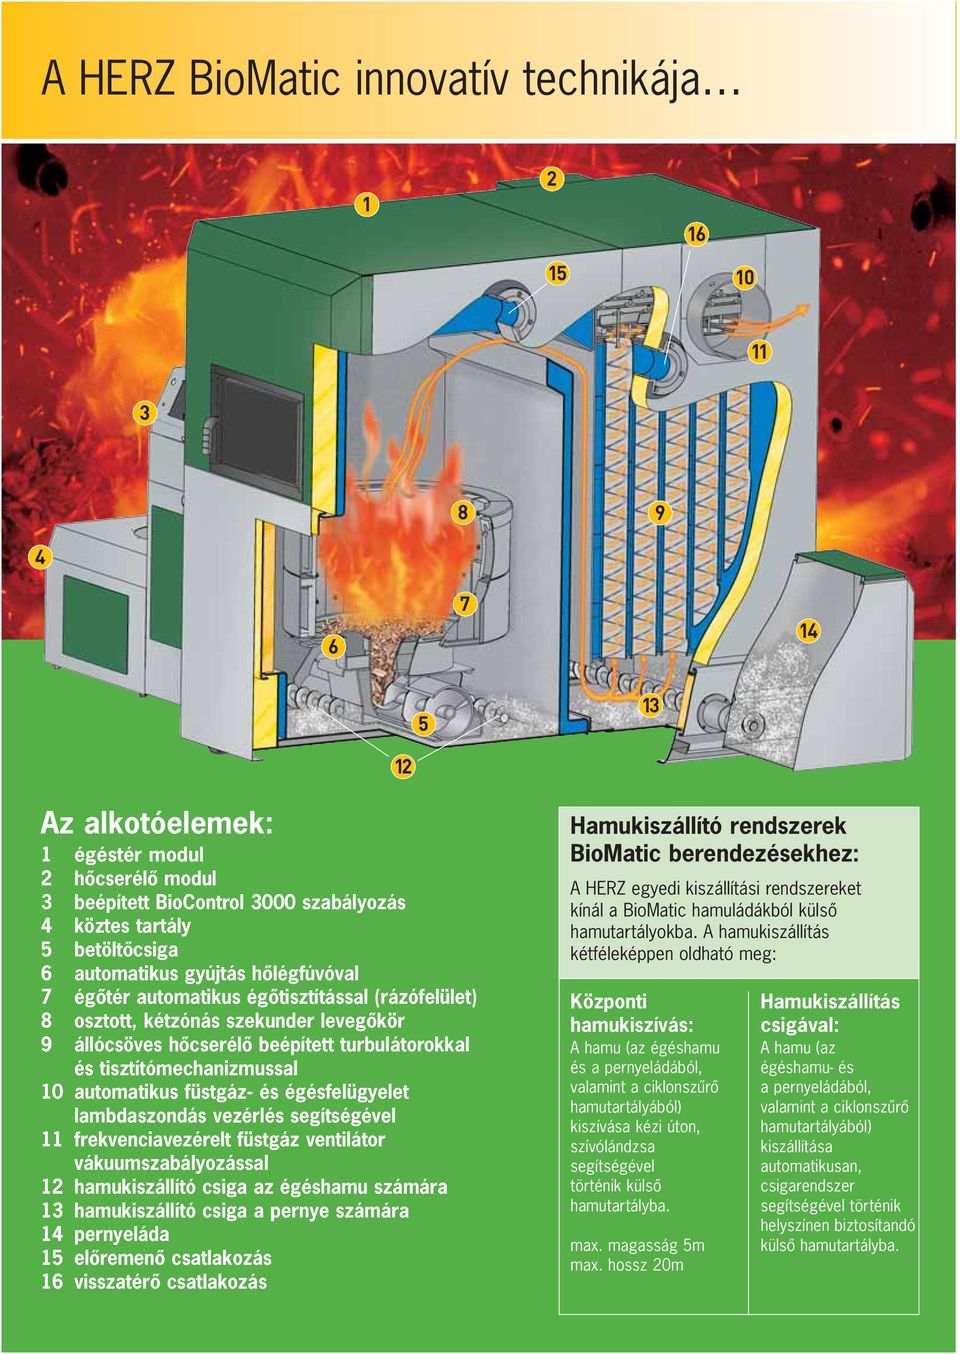 tisztítómechanizmussal 10 automatikus füstgáz- és égésfelügyelet lambdaszondás vezérlés segítségével 11 frekvenciavezérelt füstgáz ventilátor vákuumszabályozással 12 hamukiszállító csiga az égéshamu